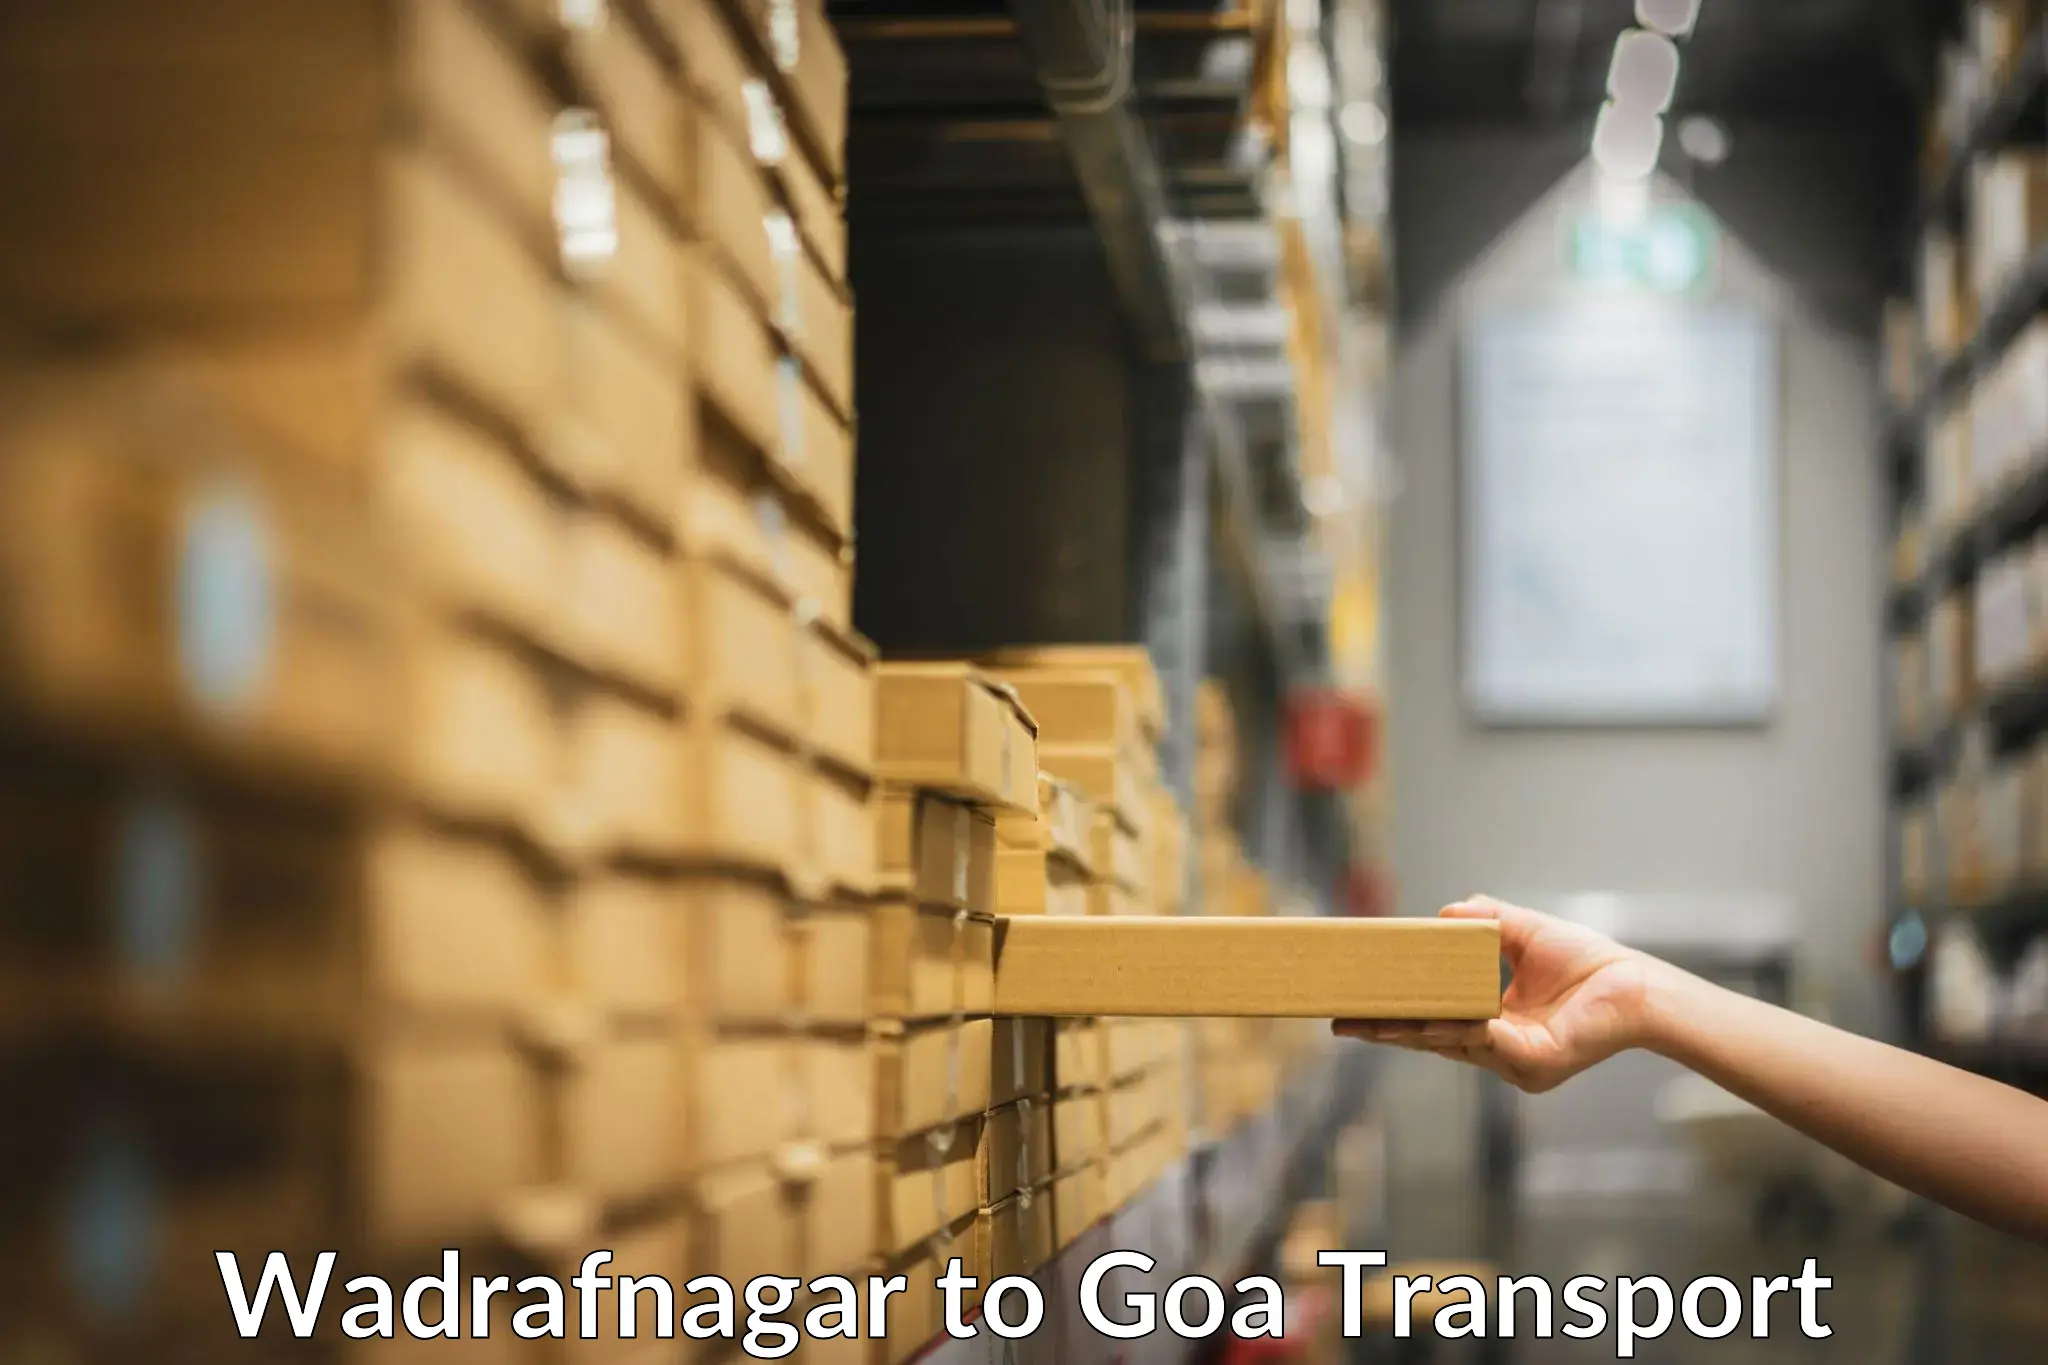 Shipping partner Wadrafnagar to Ponda